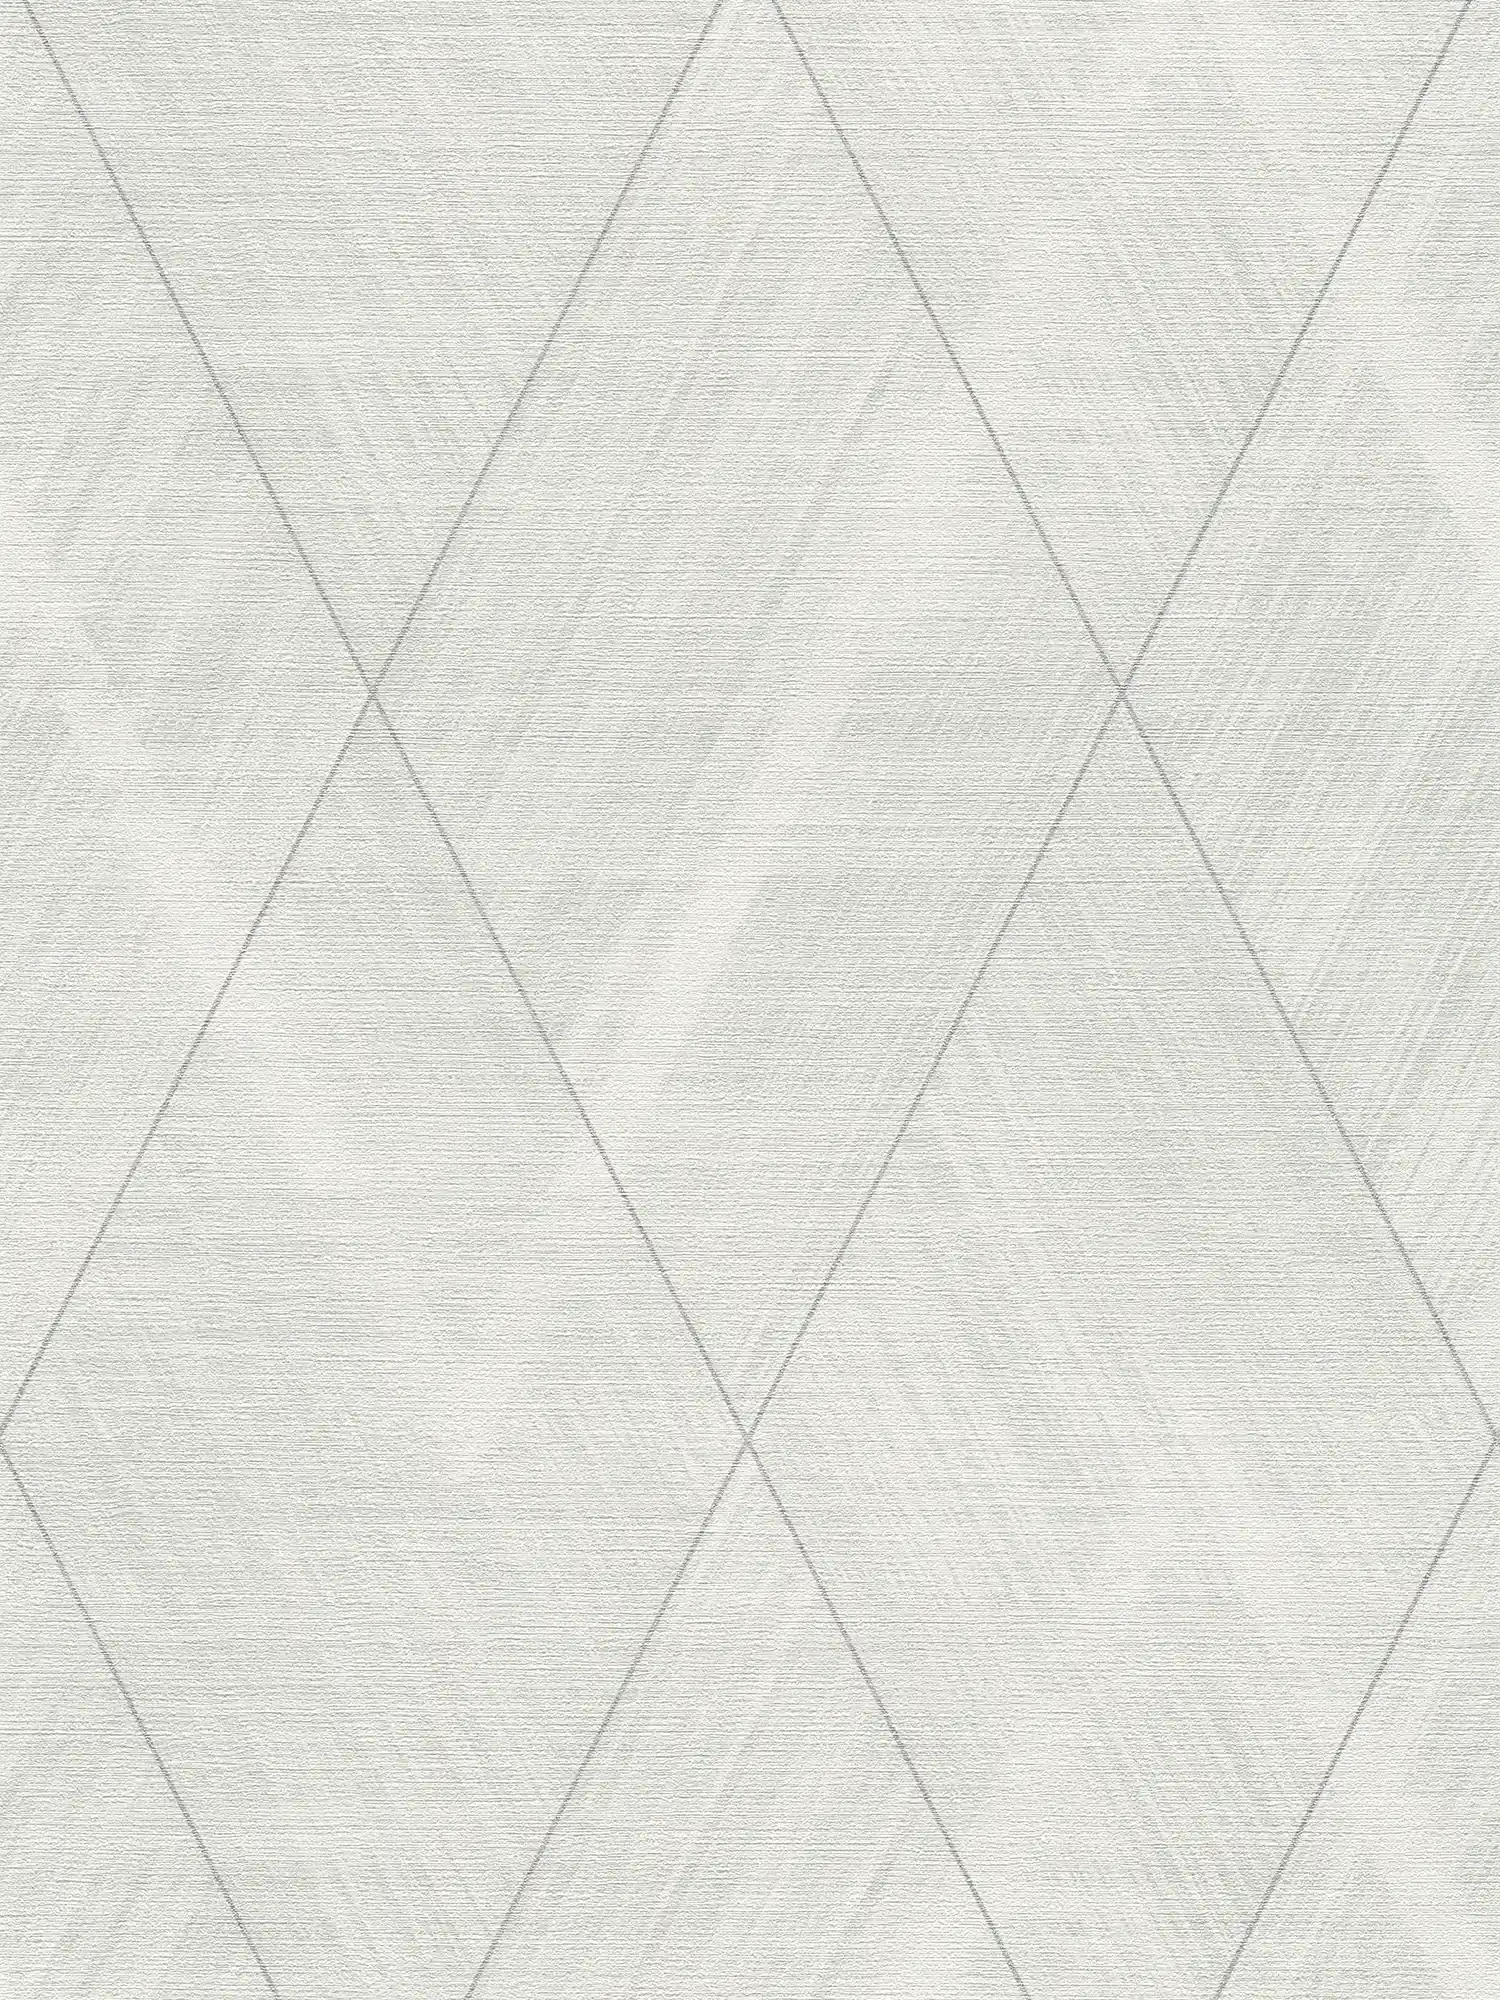             Carta da parati effetto tessuto con motivo a rombi - metallizzata, bianca
        